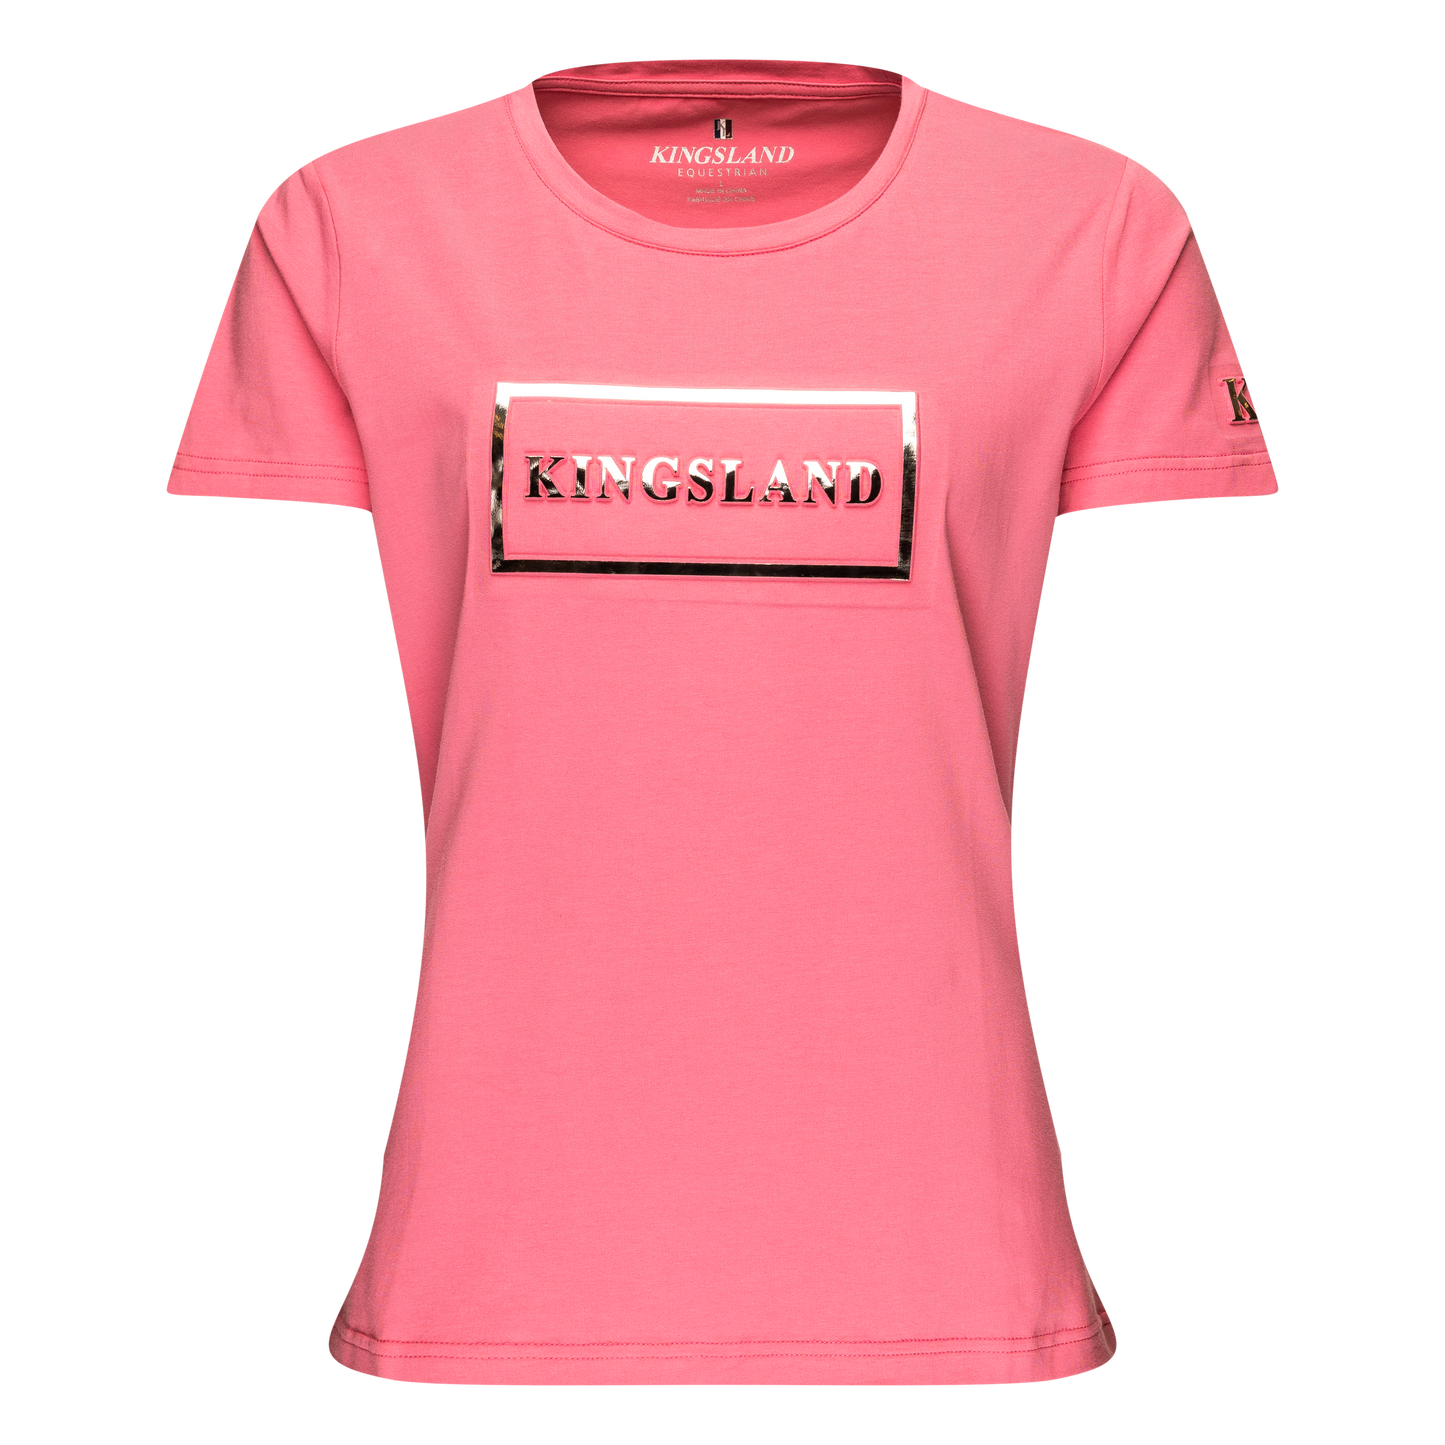 KLclement Junior T-shirt